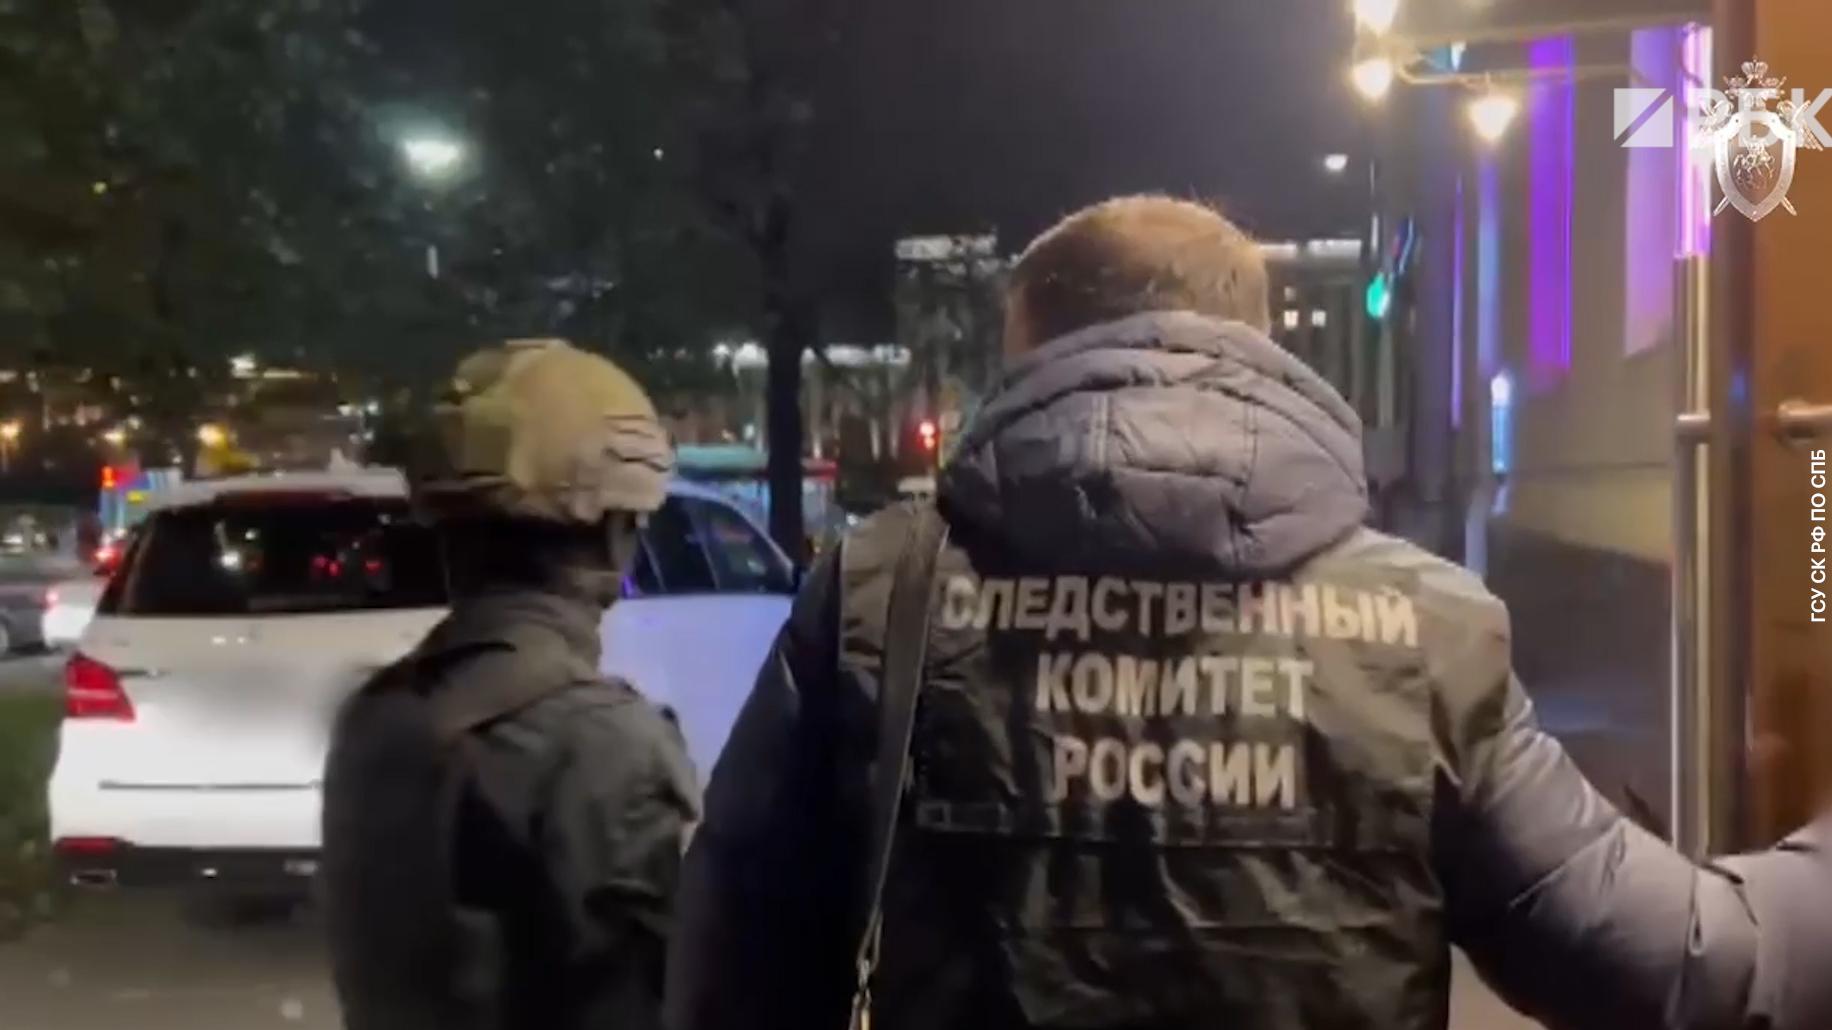 СК объявил в розыск организатора избиений прохожих в Петербурге